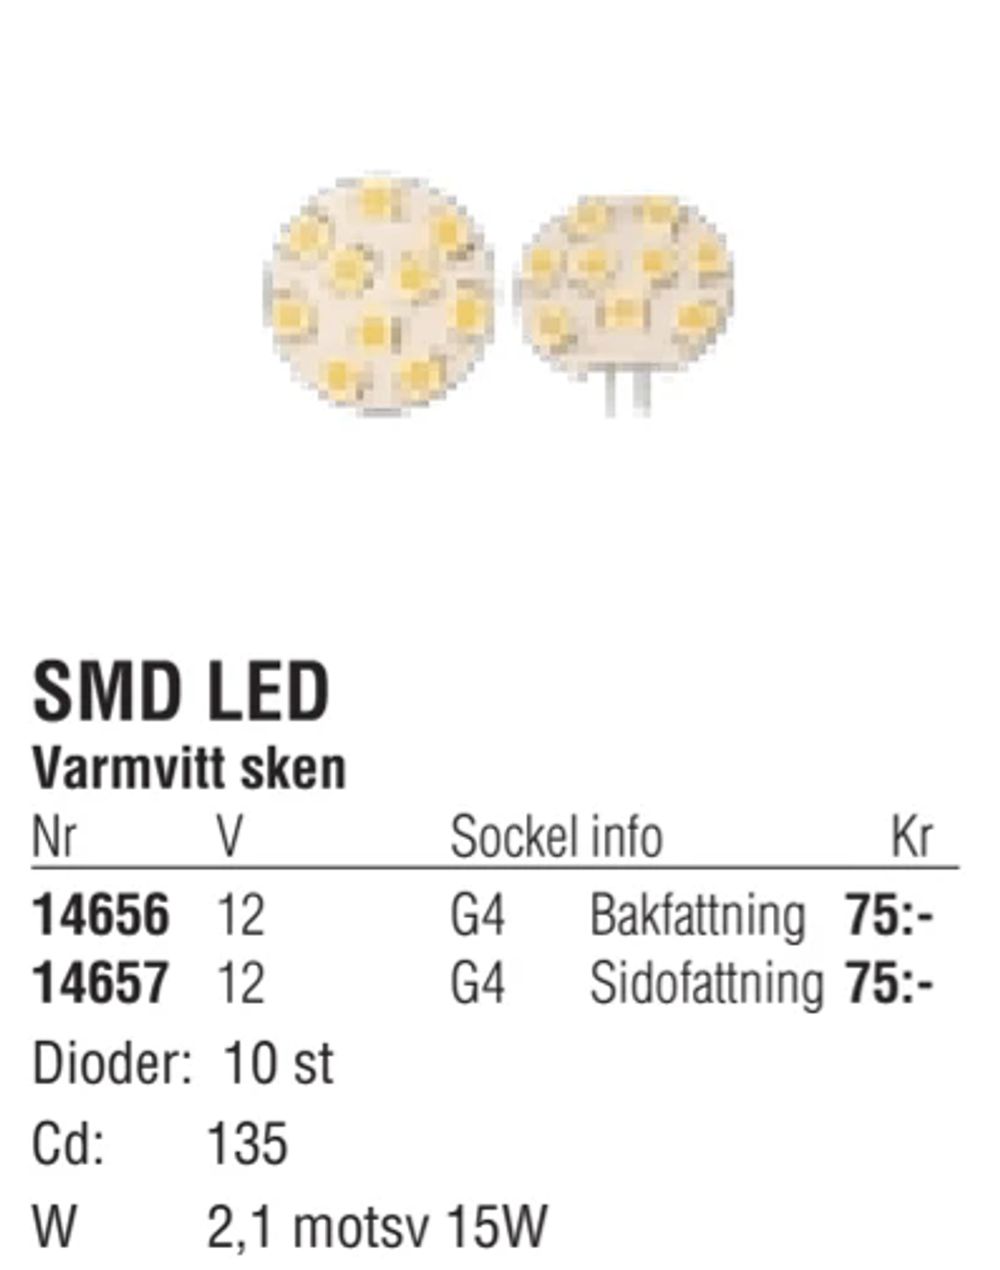 Erbjudanden på SMD LED från Erlandsons Brygga för 75 kr